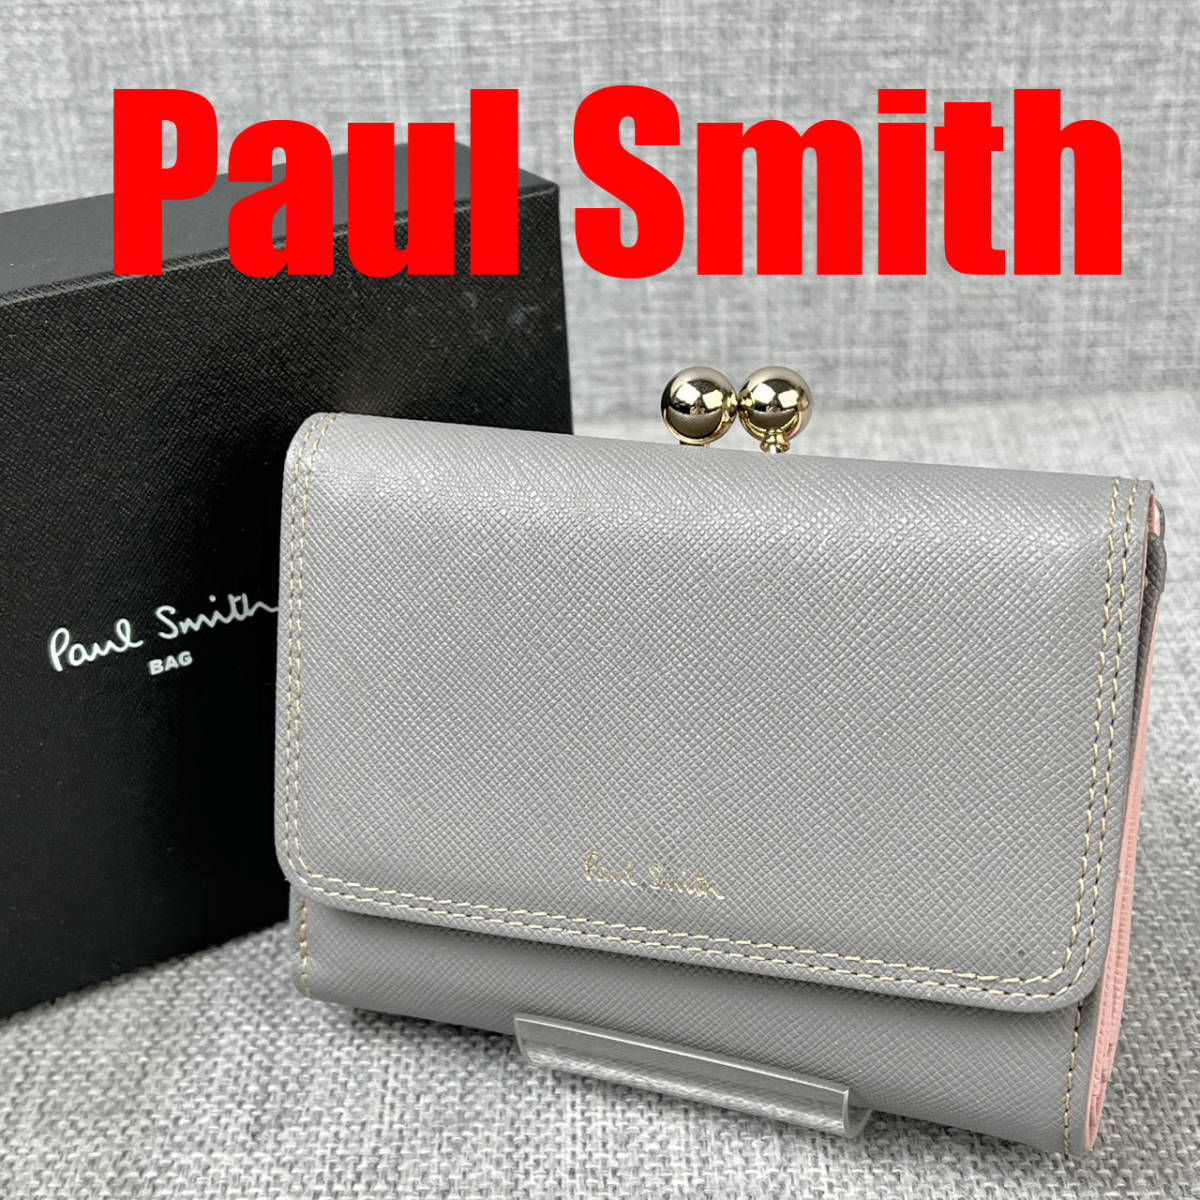 超美品★Paul Smith ポールスミス 3つ折財布 がま口小銭入れ サフィアーノレザー グレー 本革